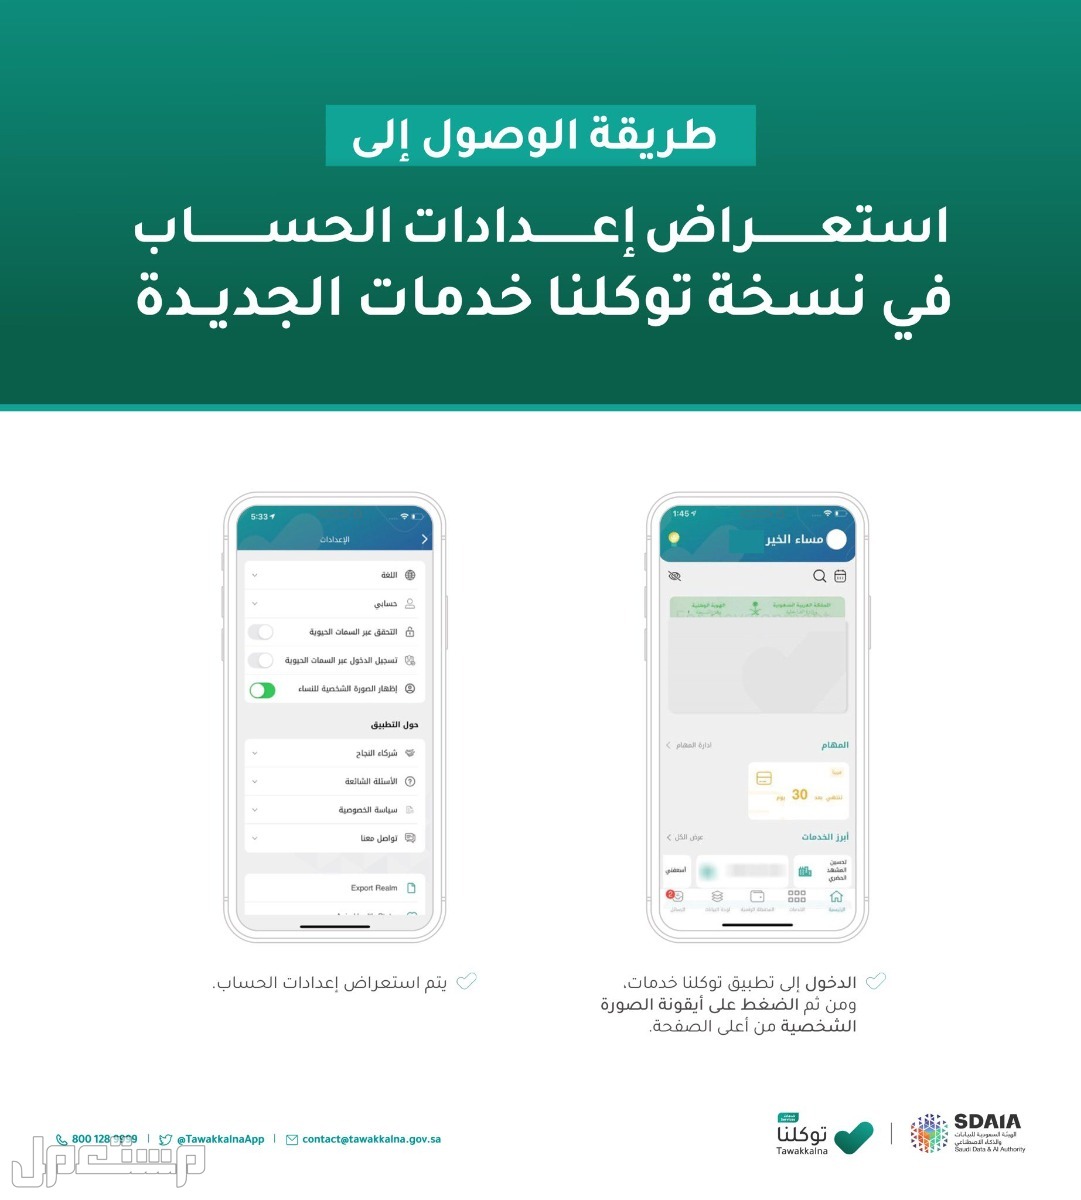 خطوات استعراض إعدادات الحساب في توكلنا خدمات في السعودية خطوات استعراض إعدادات الحساب في توكلنا